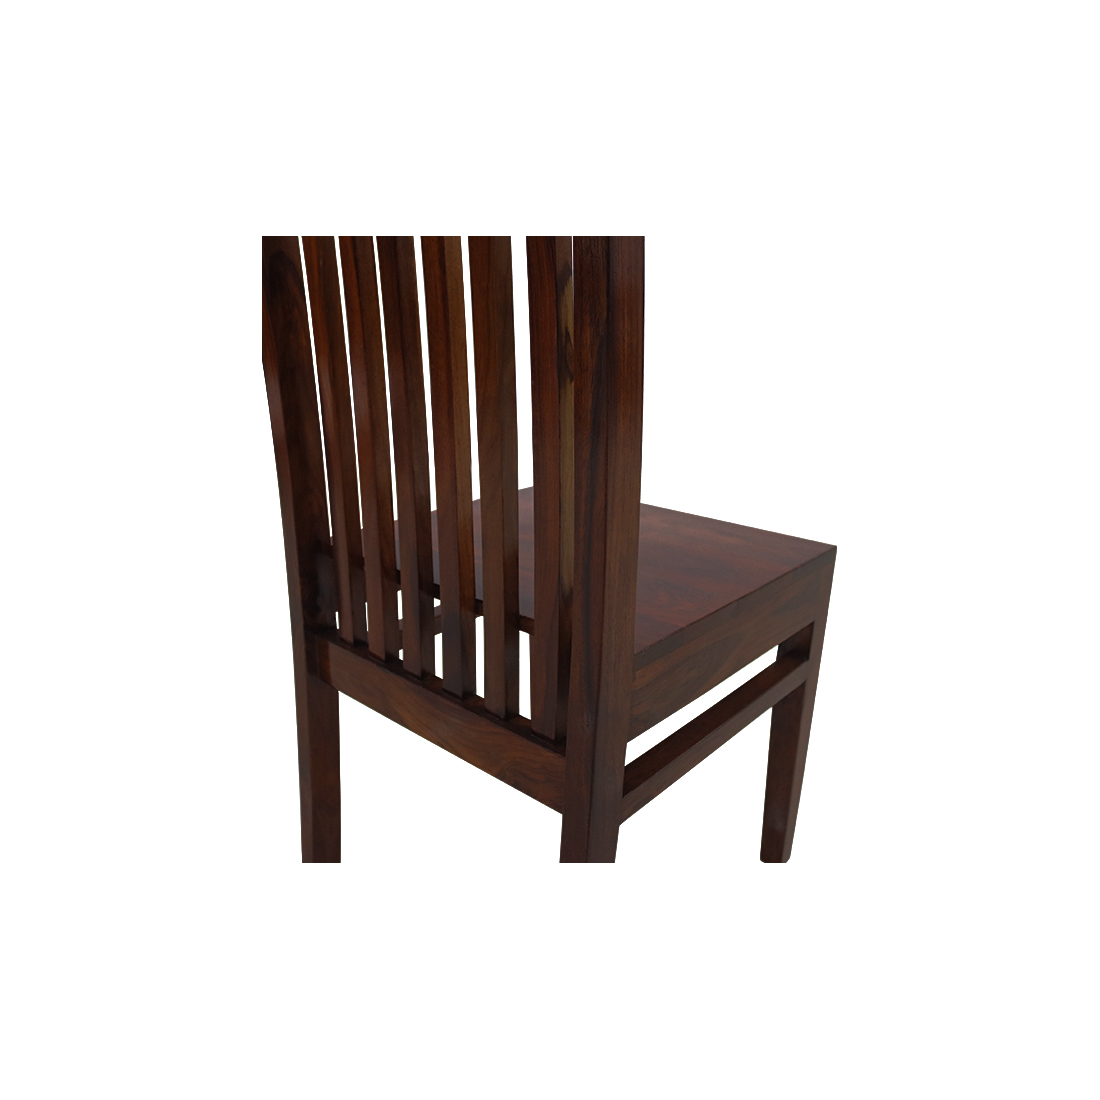 Aaram By Zebrs Furniture Sheesham Wood High Back Study  Chair